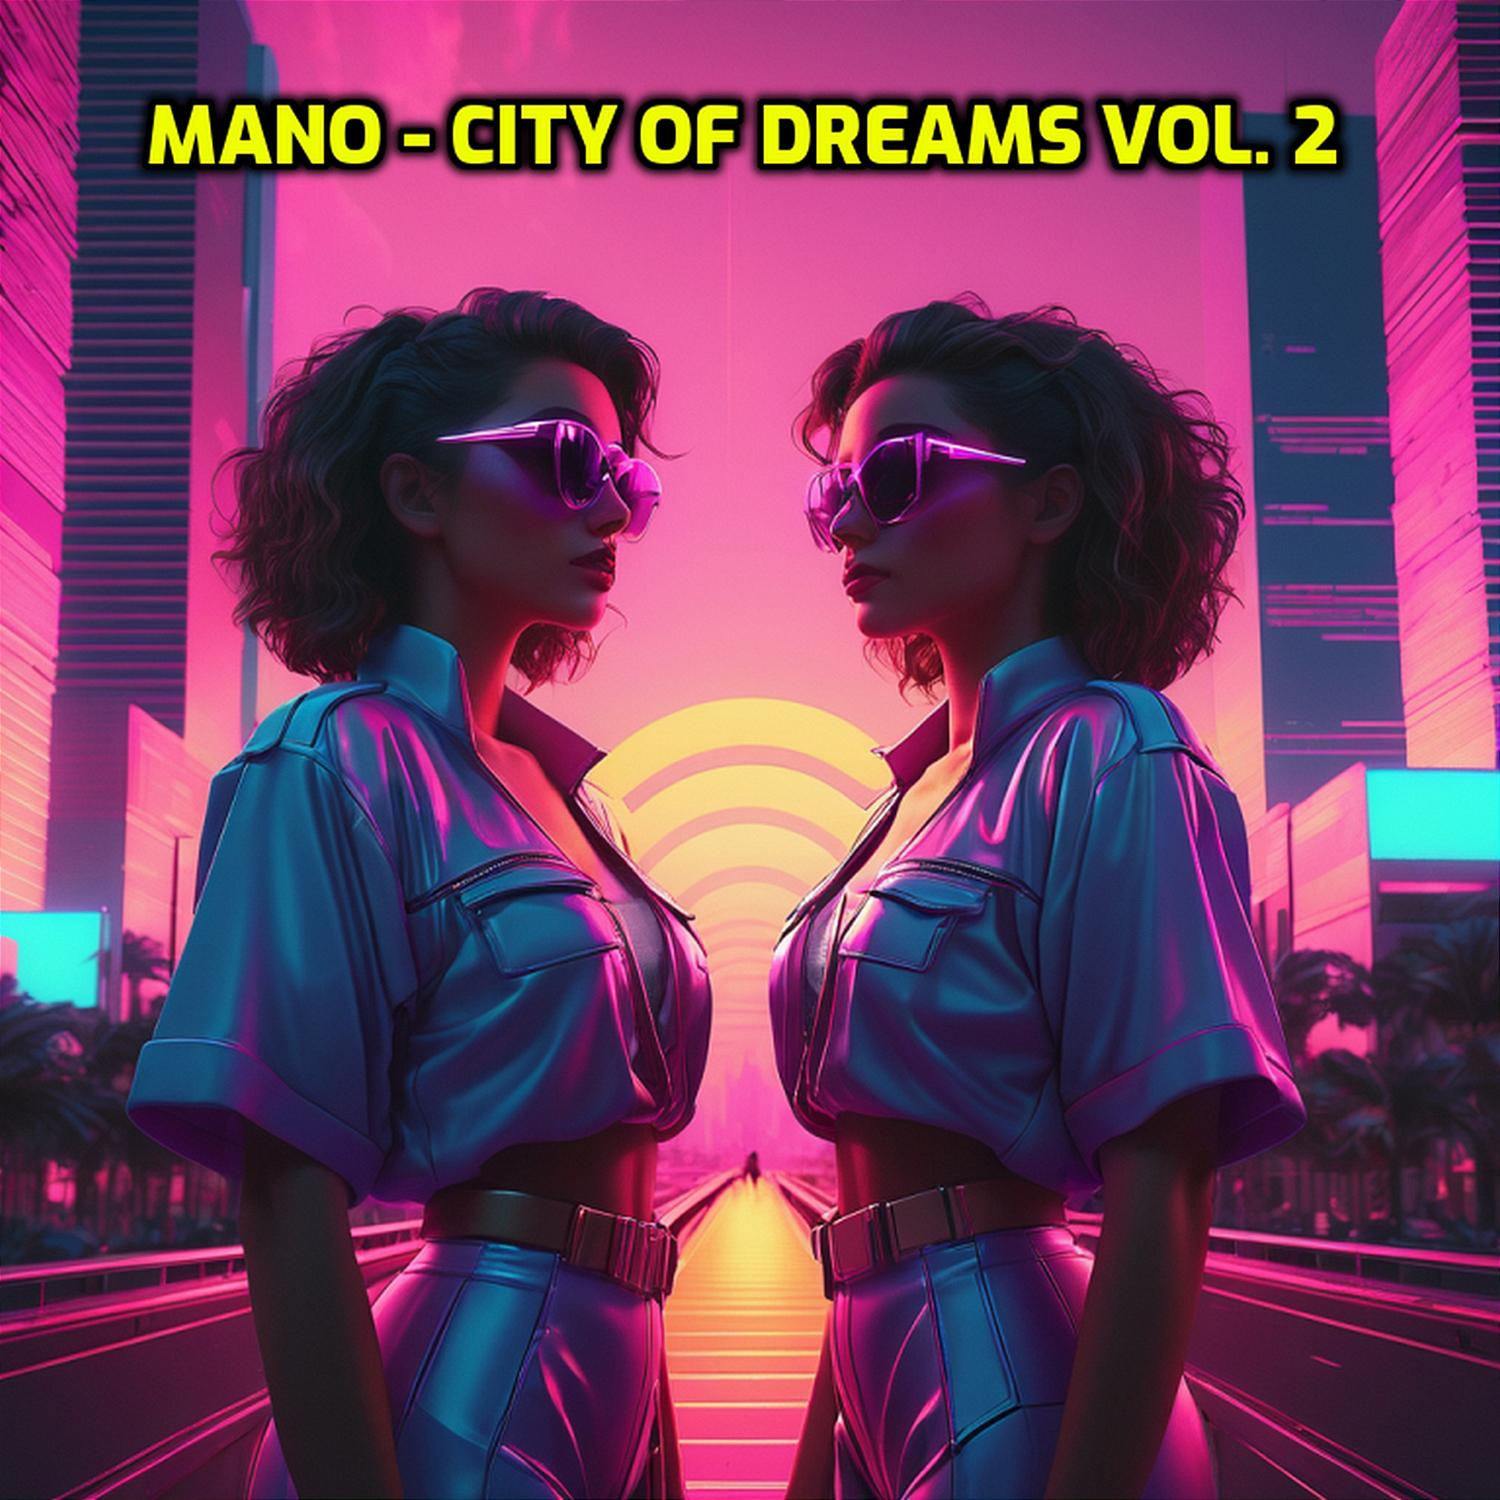 Mano - City of dreams vol. 2